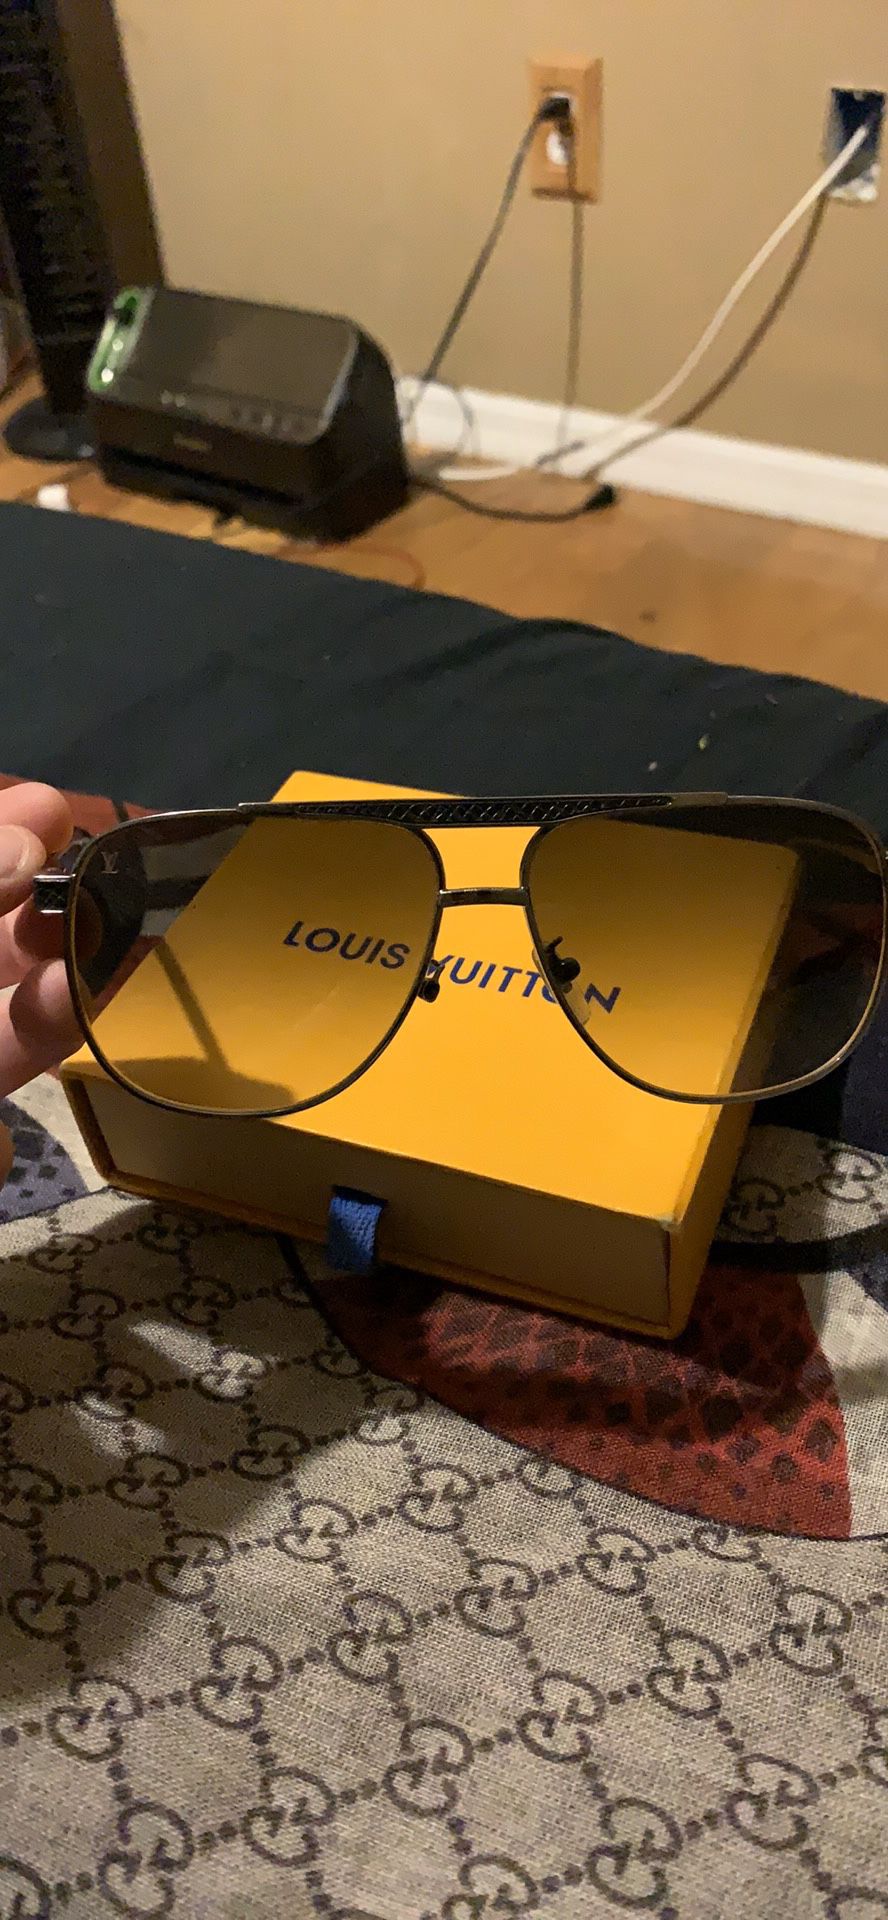 Louis Vuitton sunglasses, negotiable